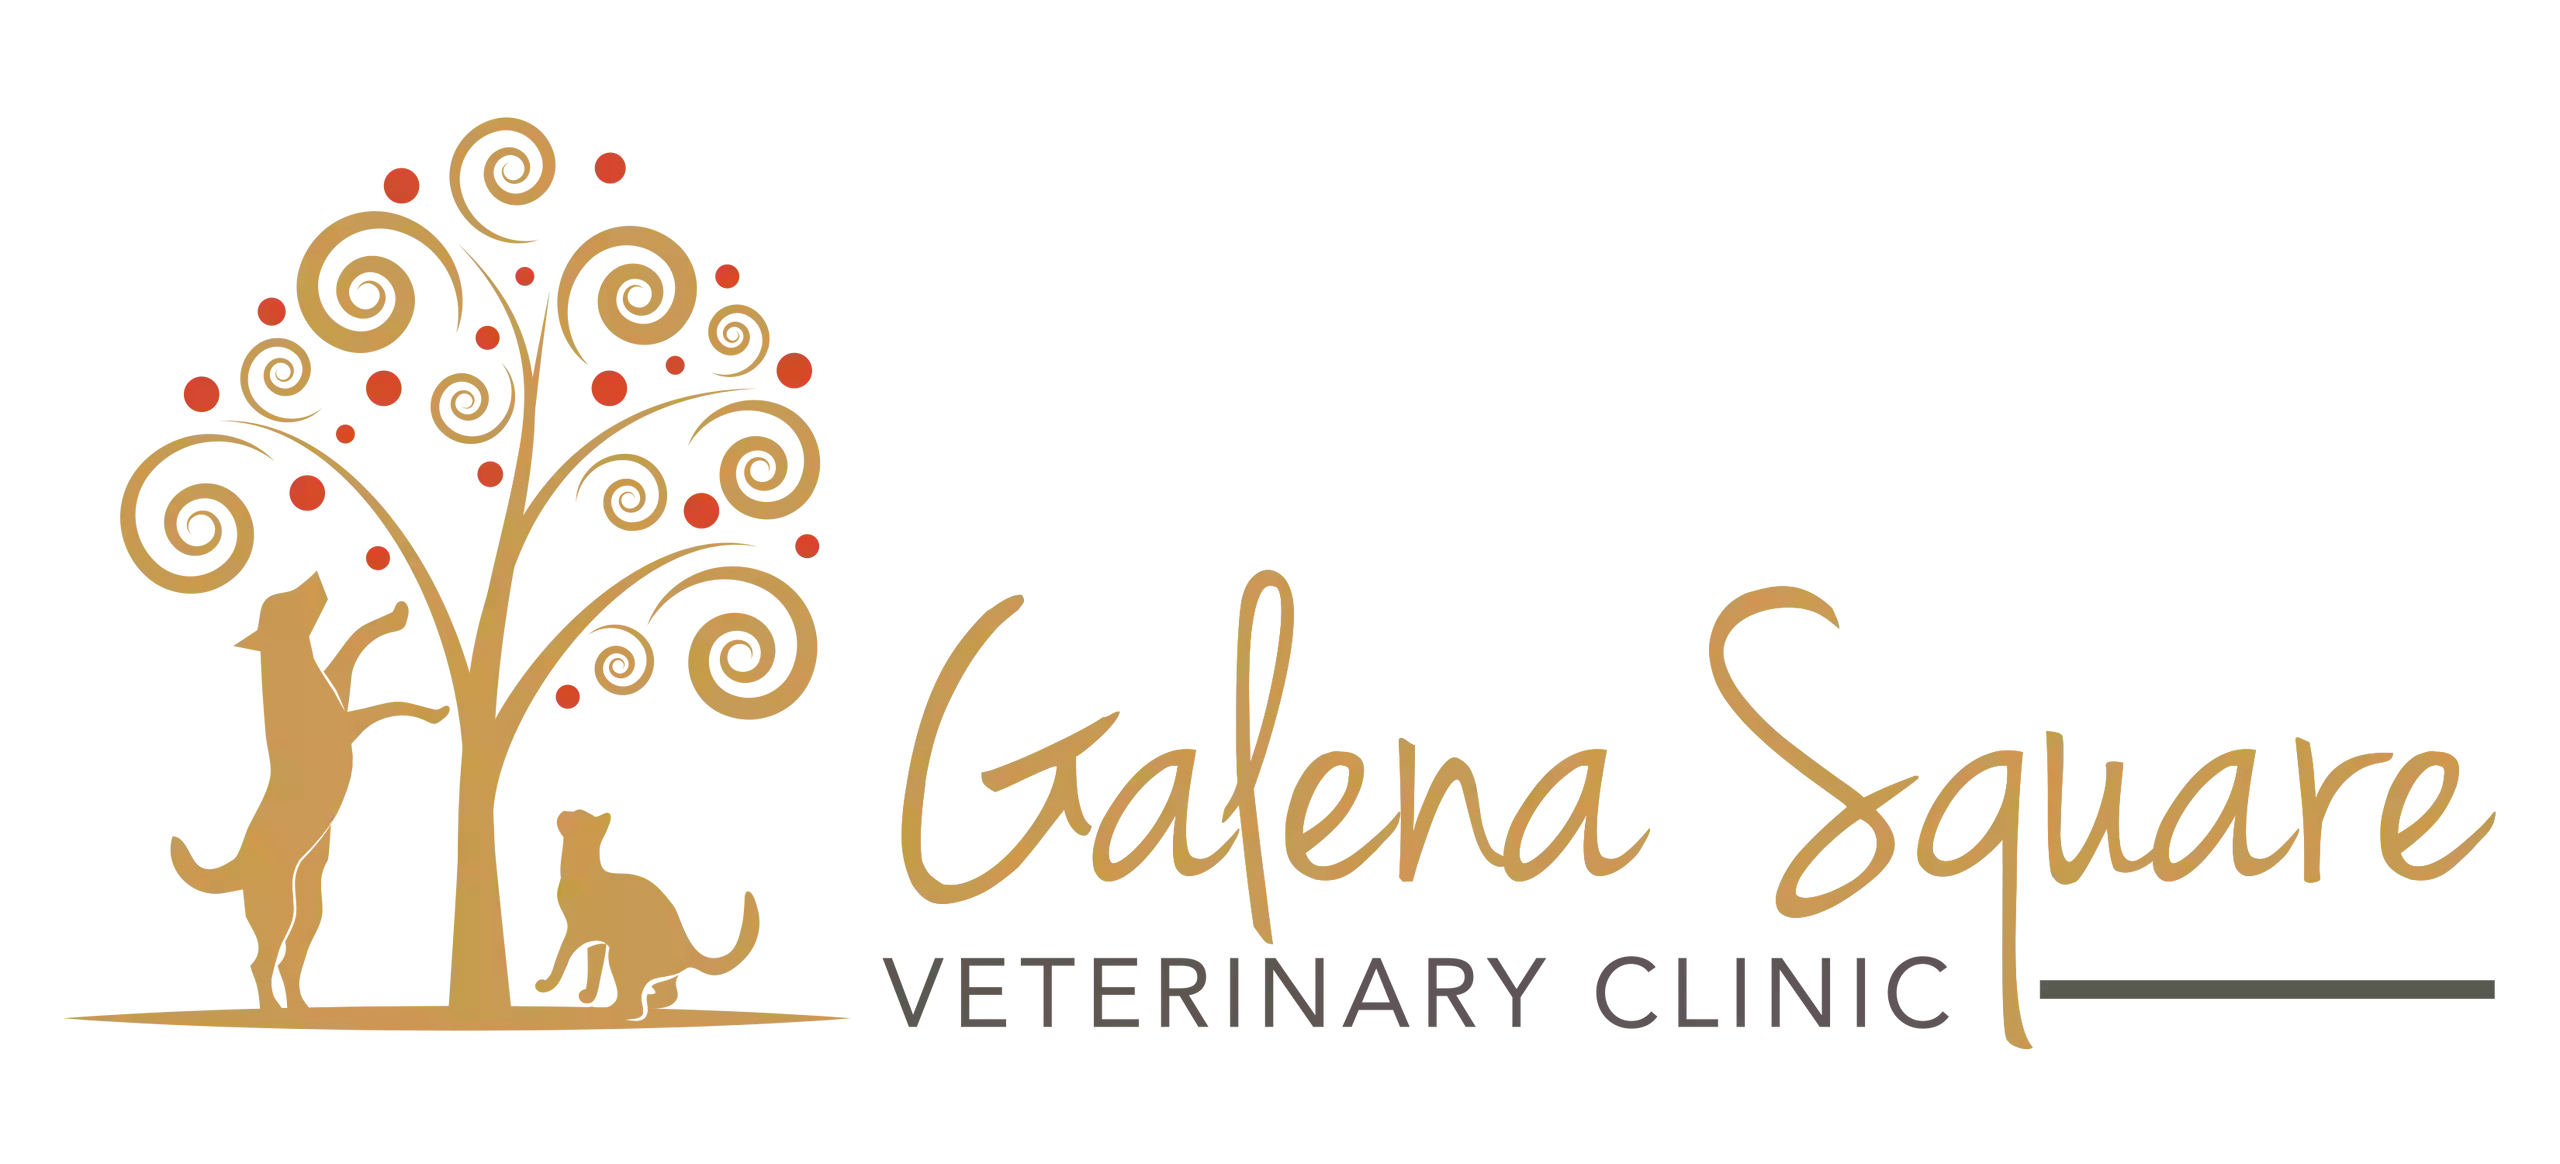 Galena Square Veterinary Clinic